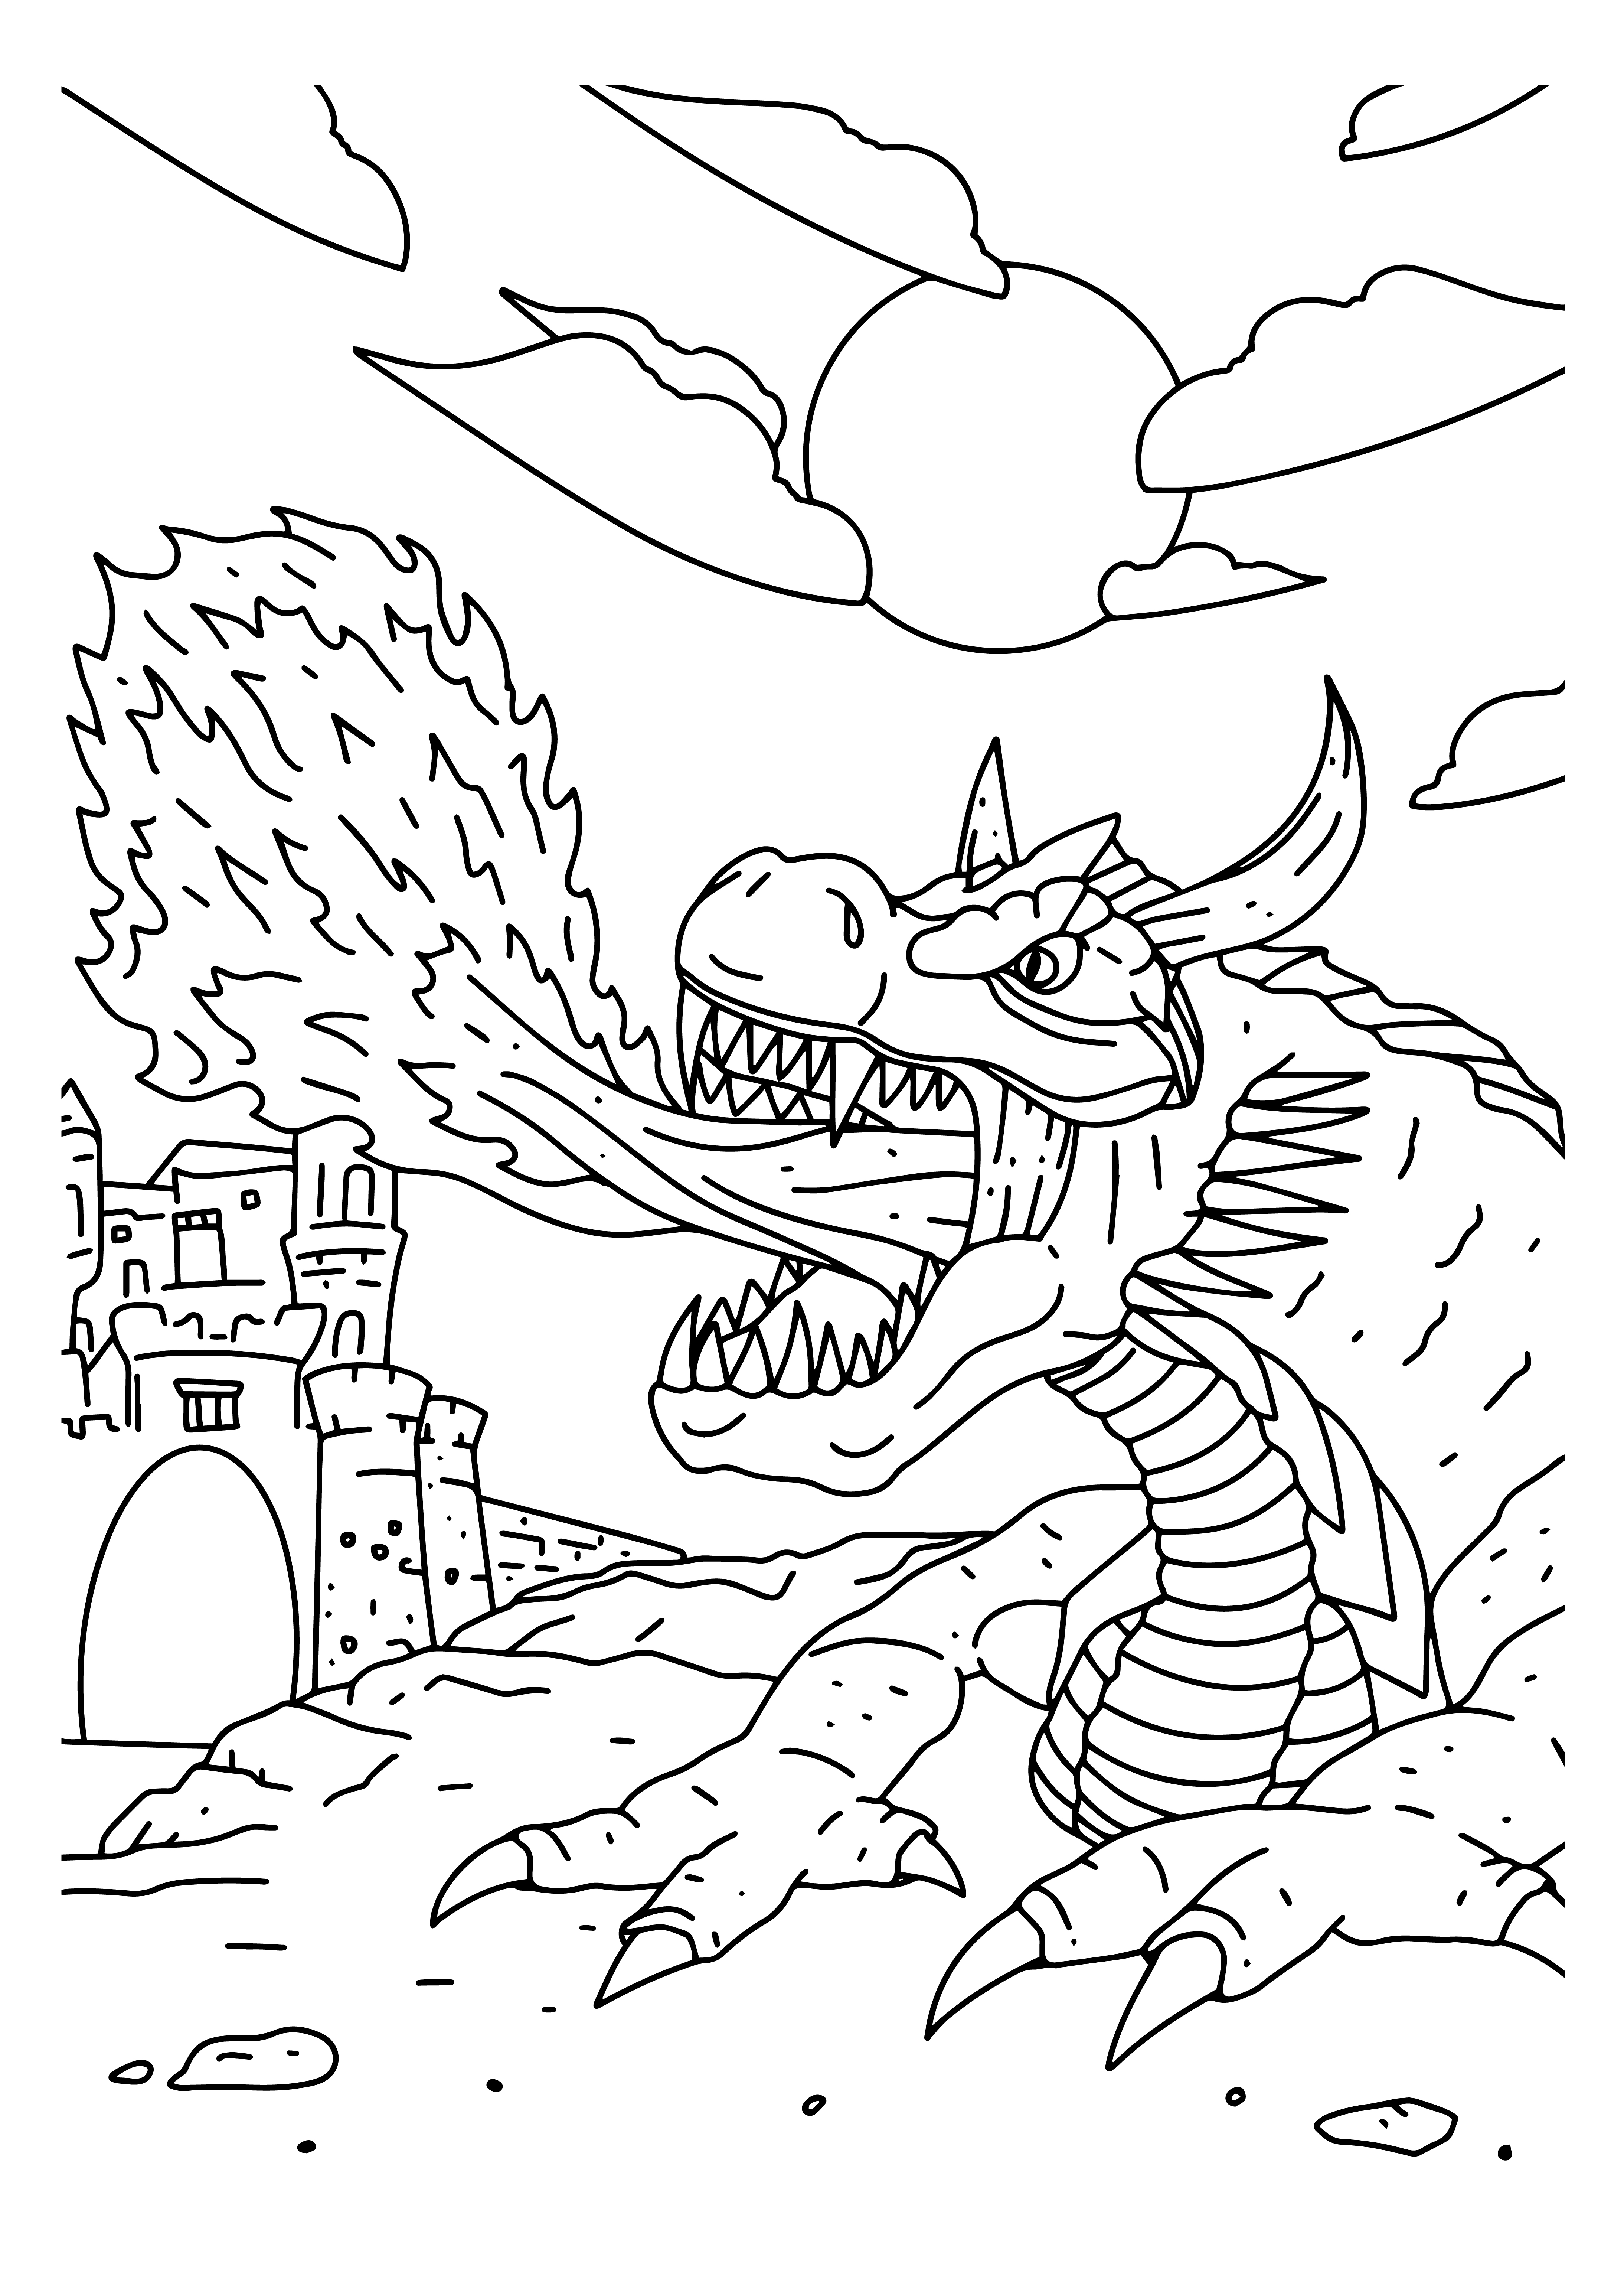 Раскраска китайский дракон и замок формата А4 в высоком качестве